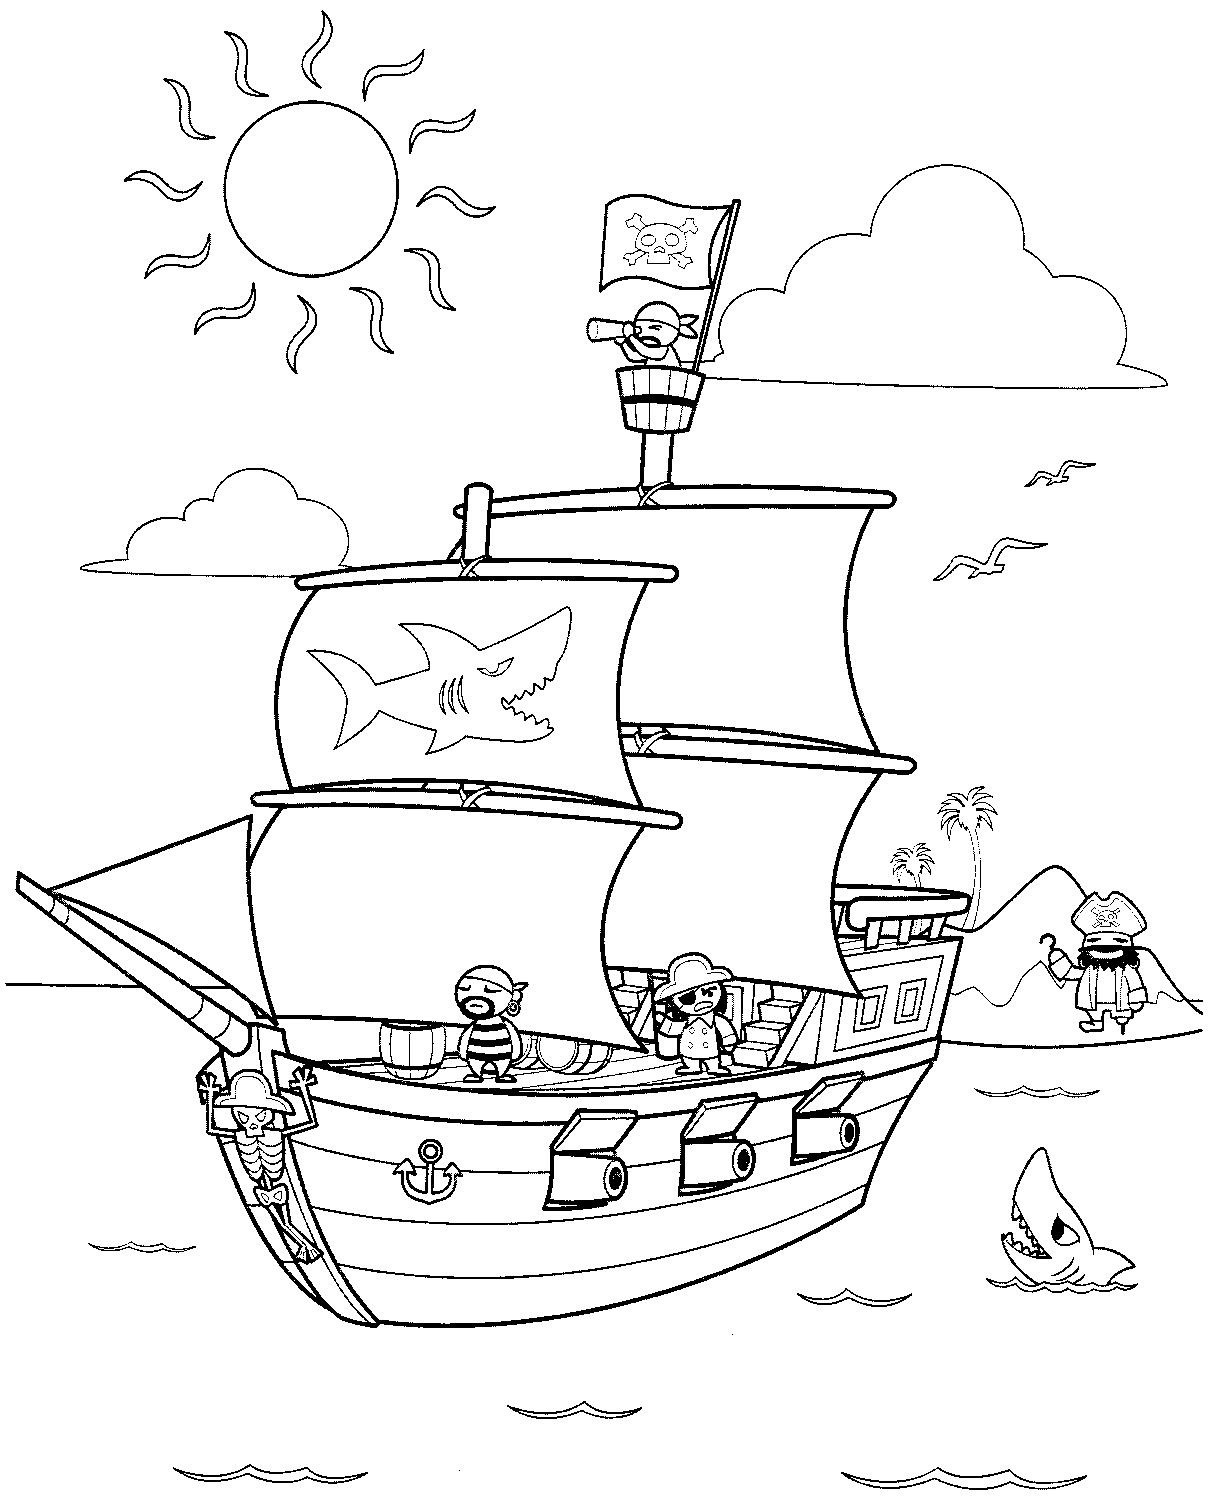  Пираты на корабле, остров с пальмами, море, чайки, акулы